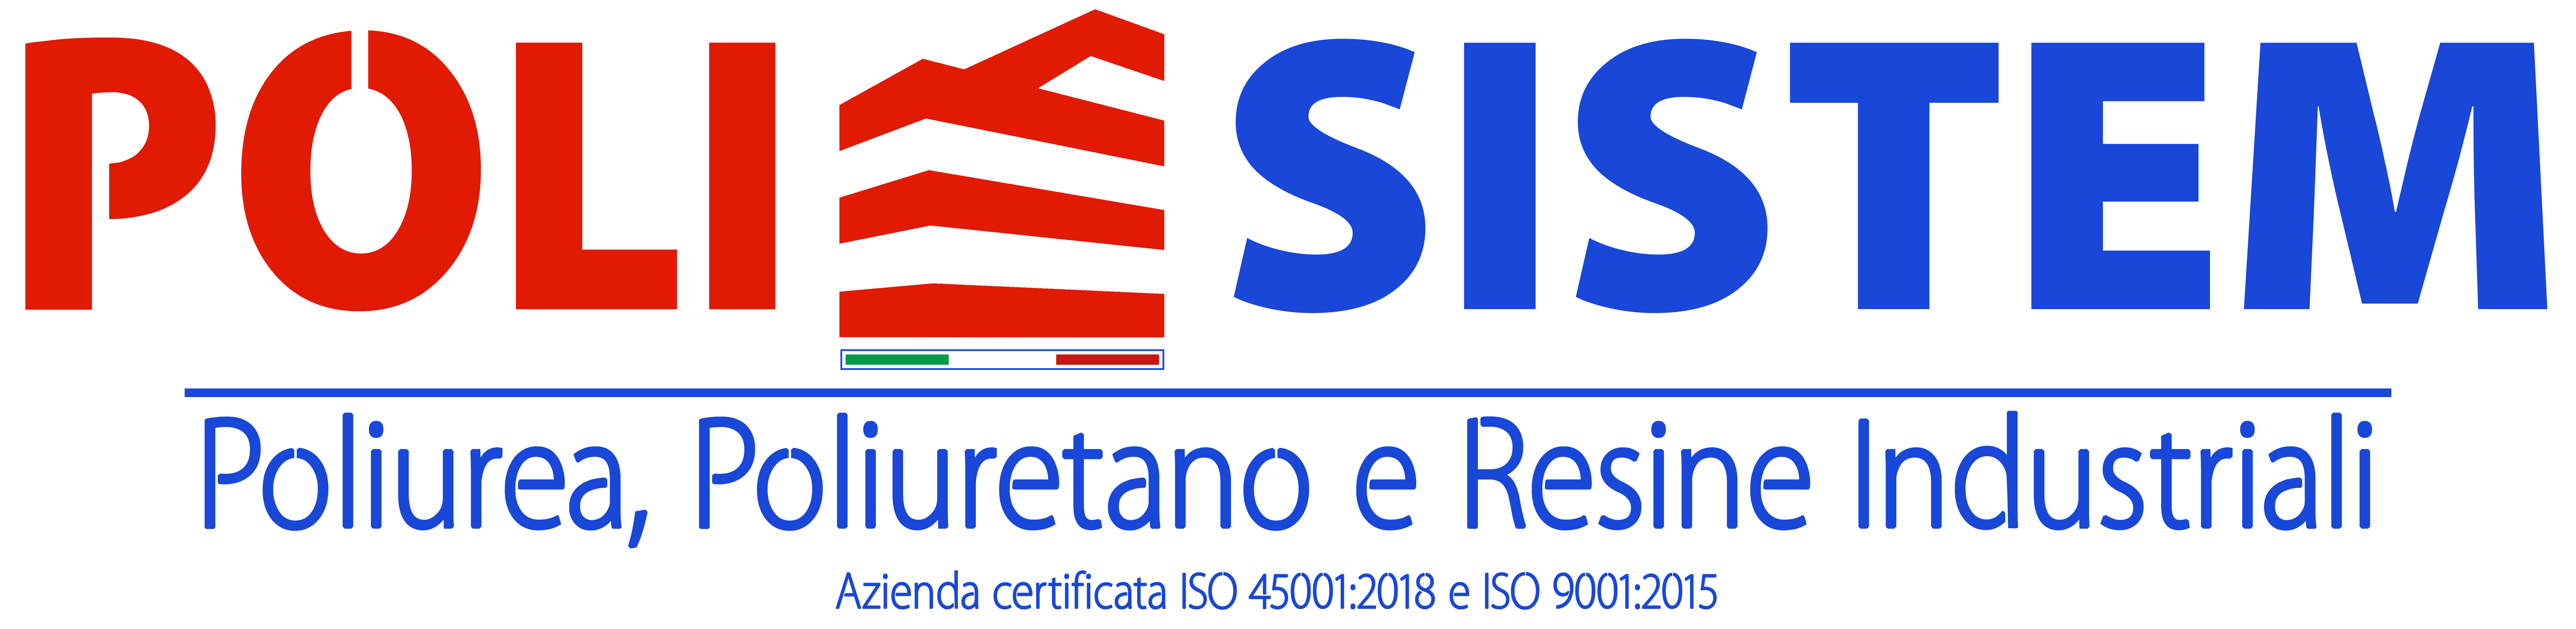 PoliSistem Italia - Azienda Certificata ISO 45001 - 9001 - Specialisti in Poliuretano & Poliurea e Resine Industriali a Roma